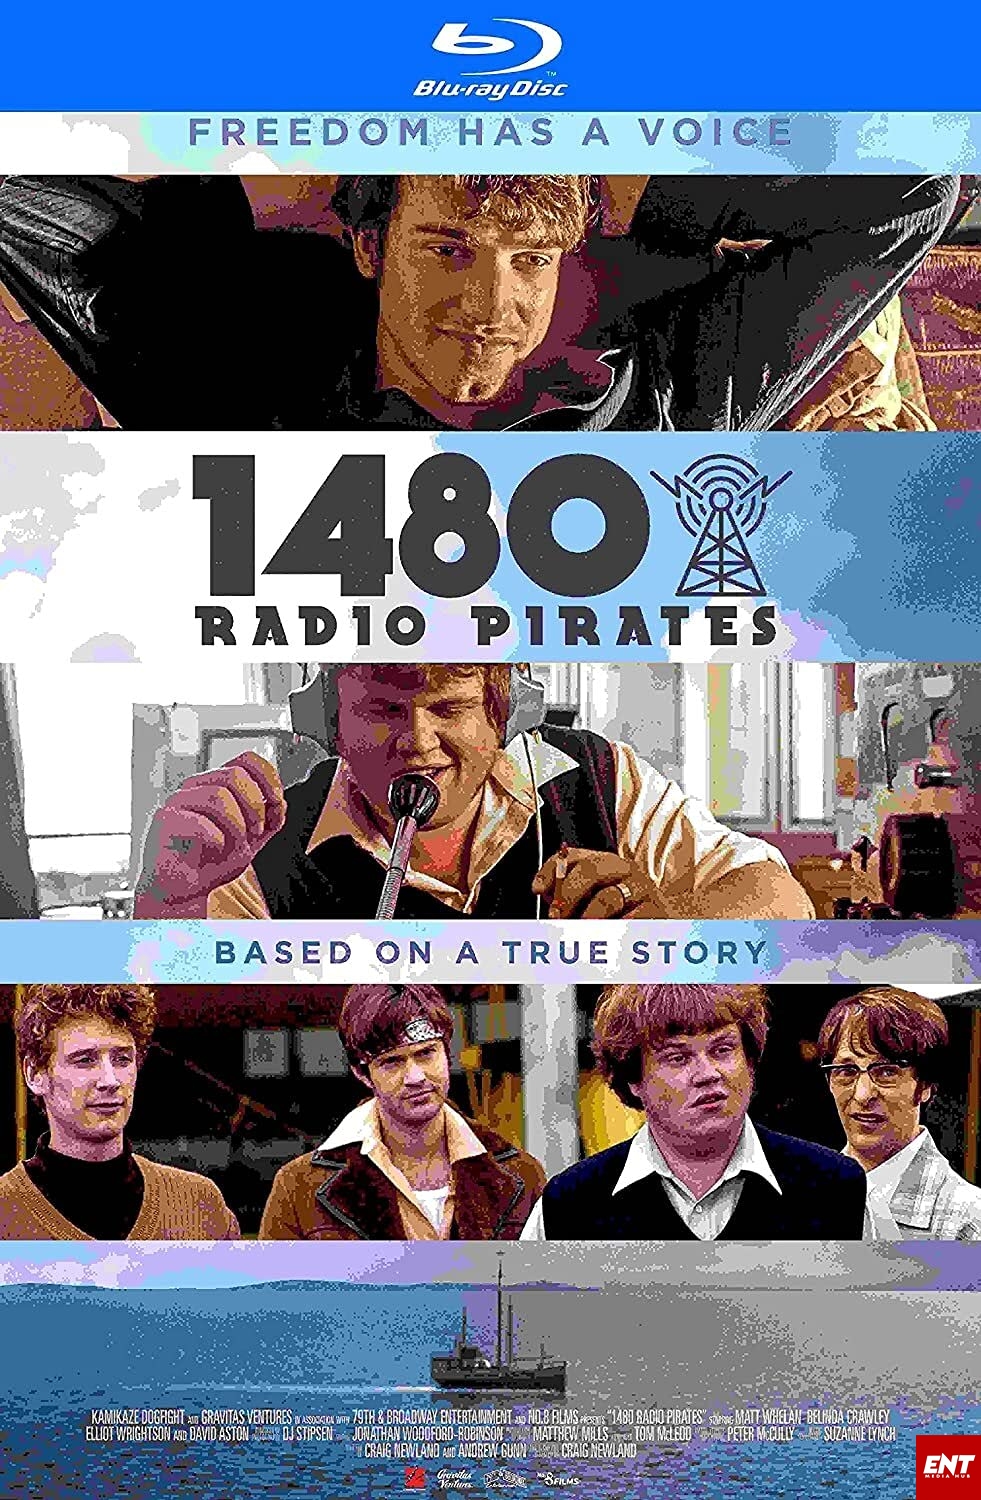 MOVIE : 1480 Radio Pirates (2021)